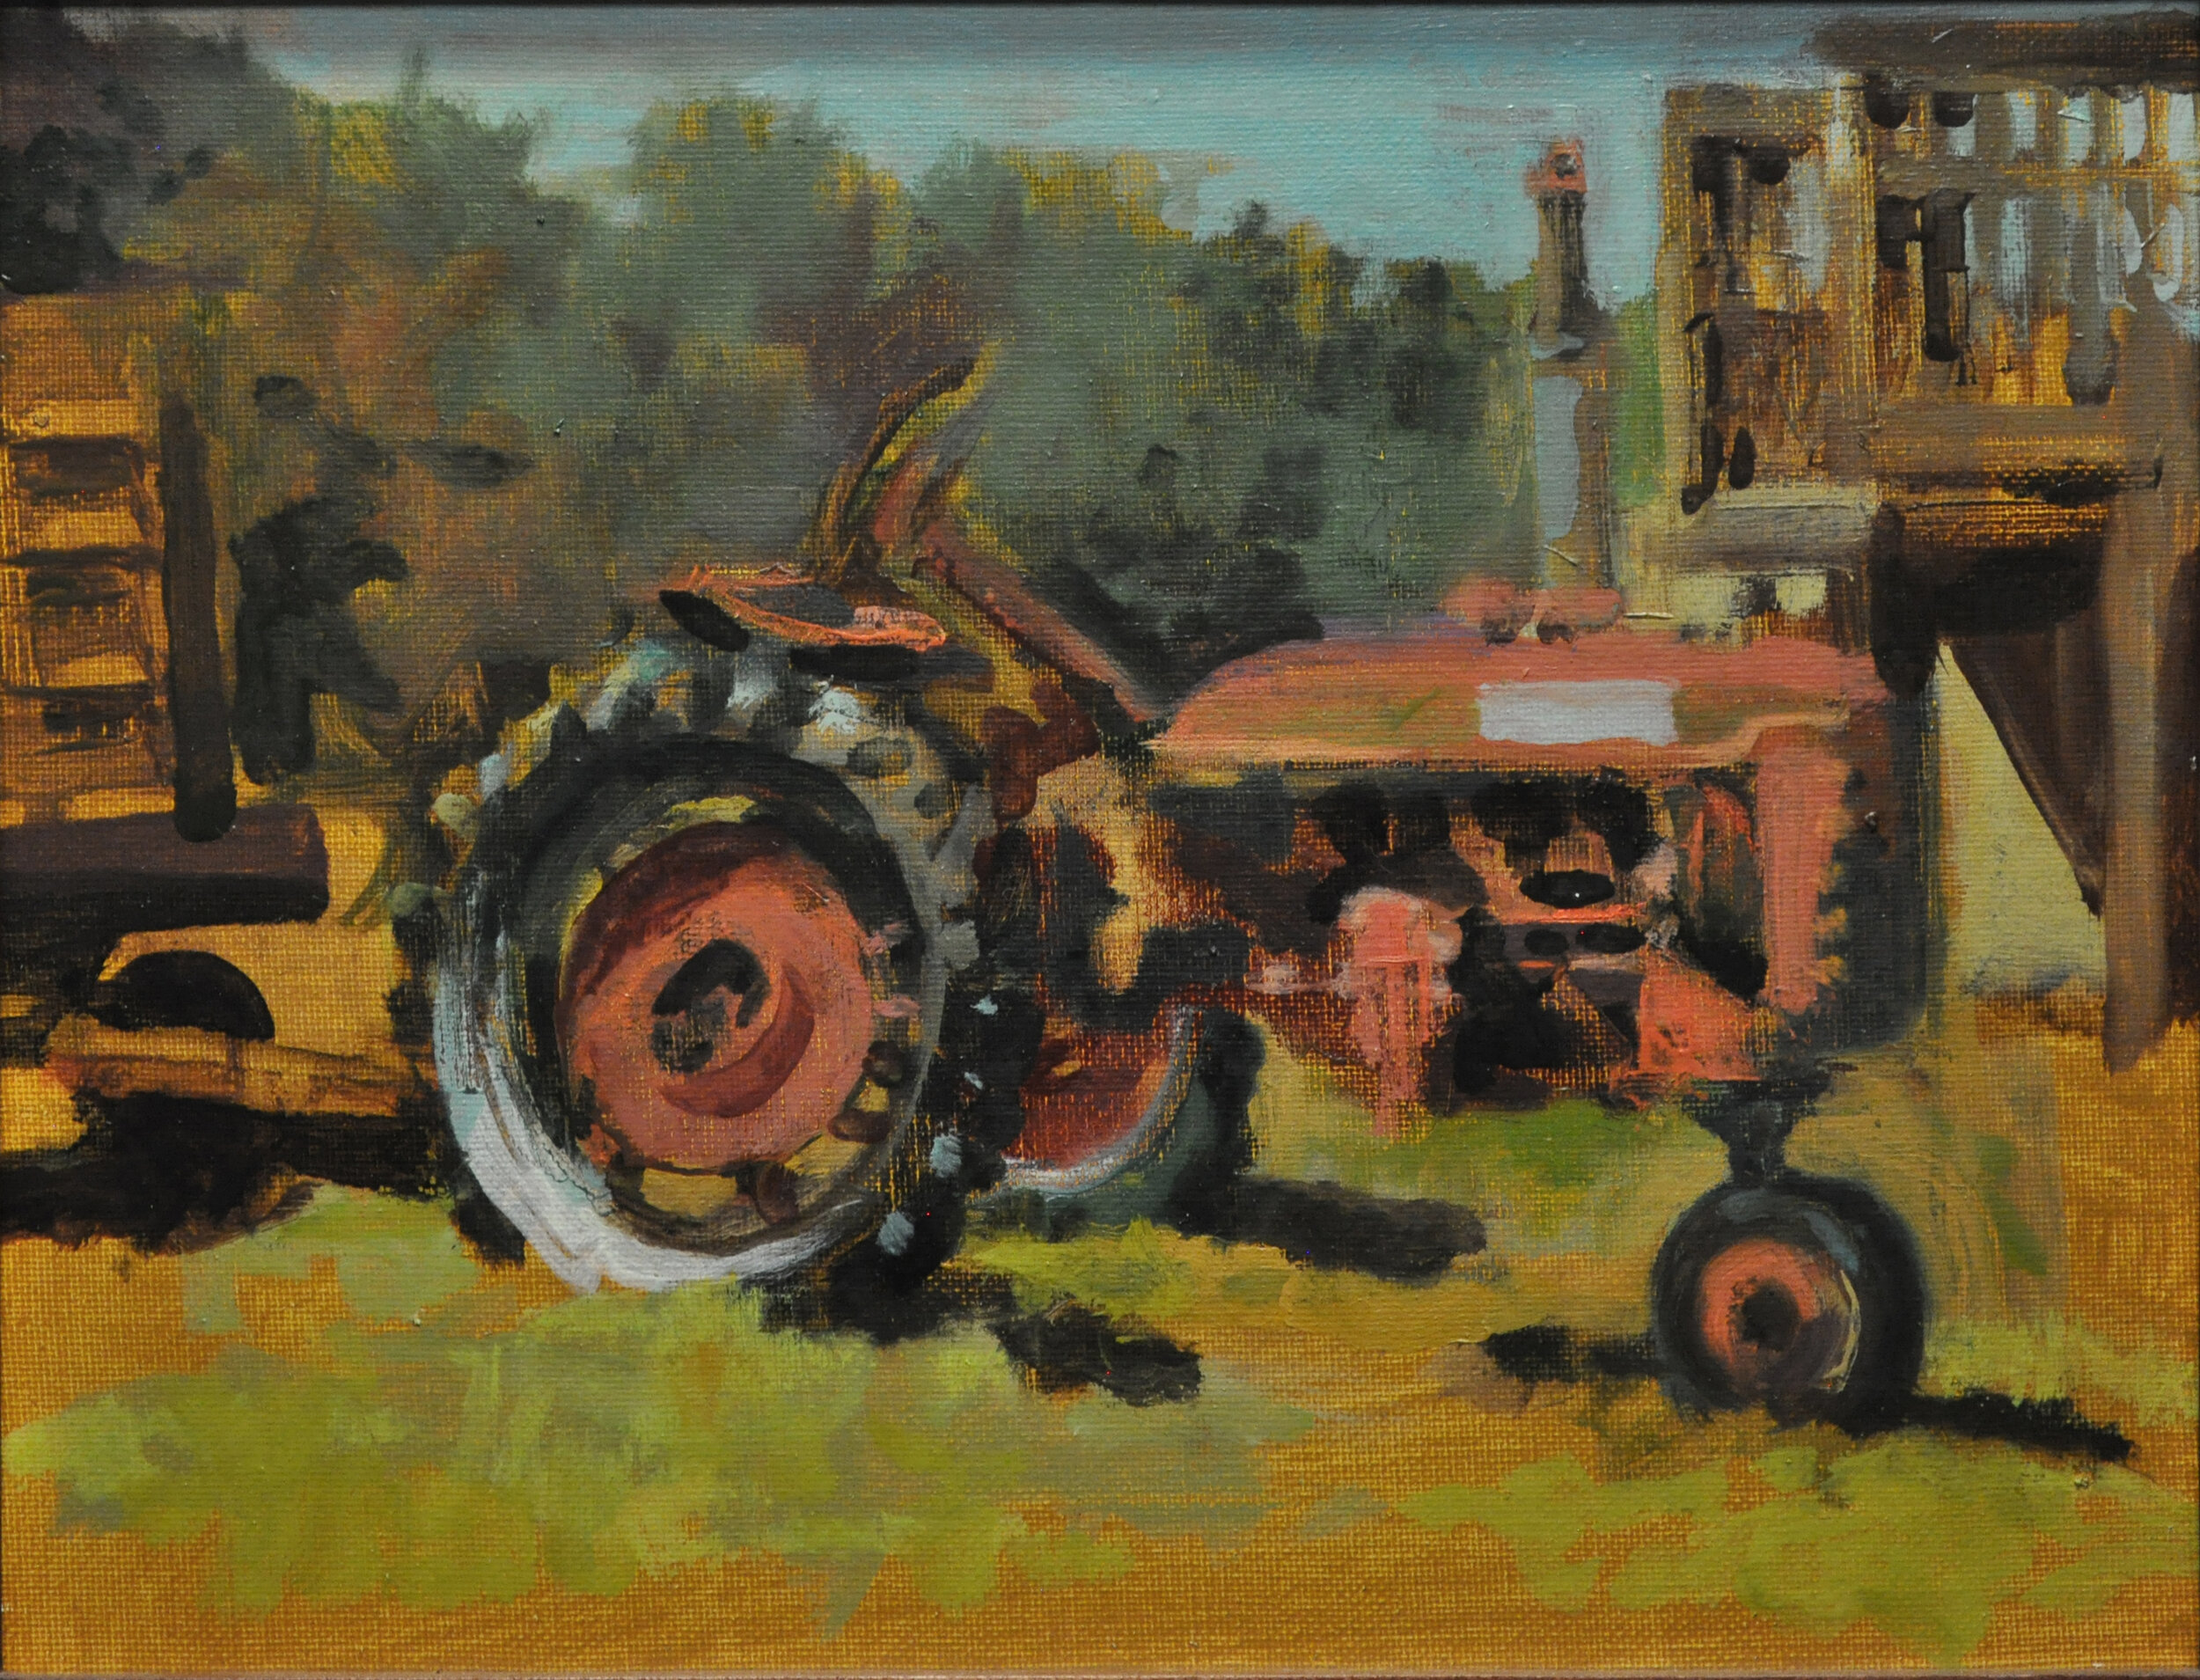 Clark's Tractor